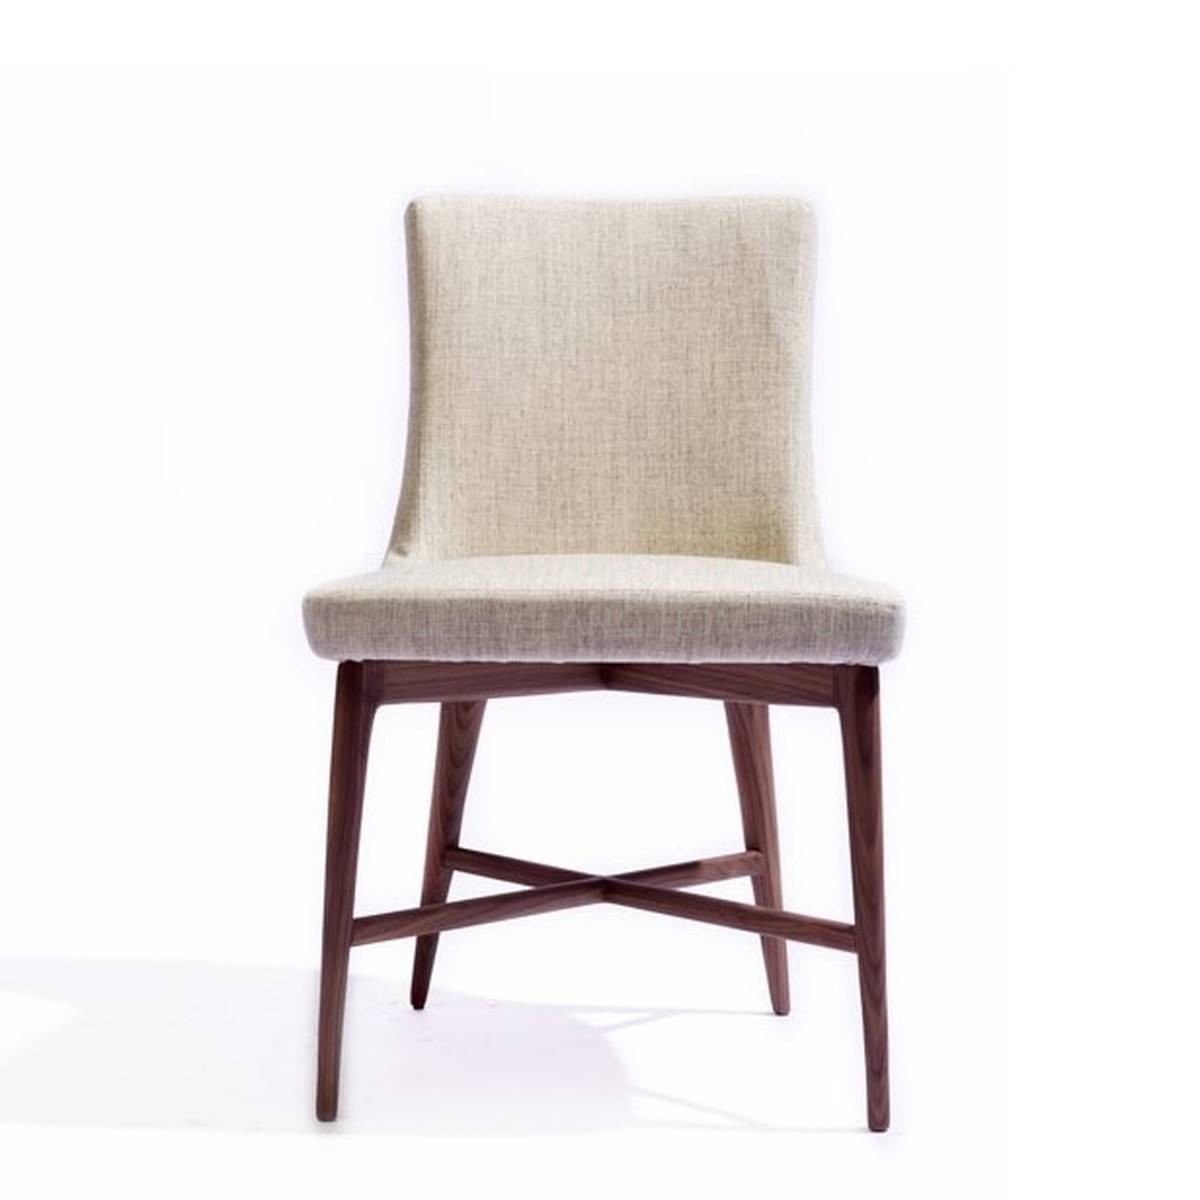 Стул Shanghai Chair из Италии фабрики SAWAYA & MORONI